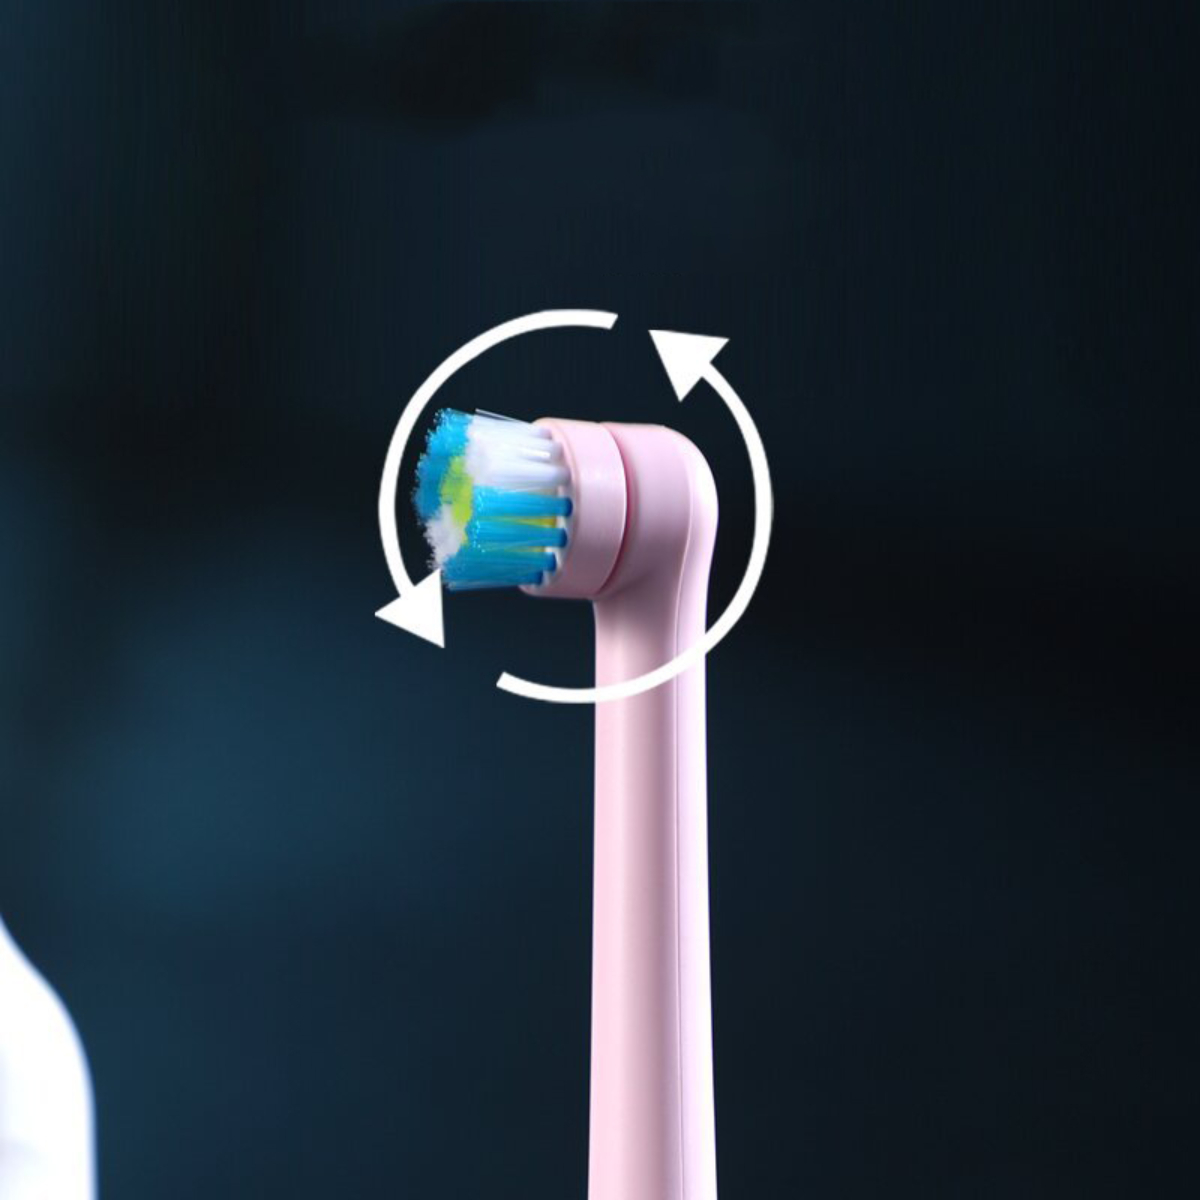 LACAMAX Elektrische Zahnbürste, und in Wasserdicht Blau Leise Drehkopf, mehrere 360° Reinigung Elektrische Richtungen, Zahnbürste